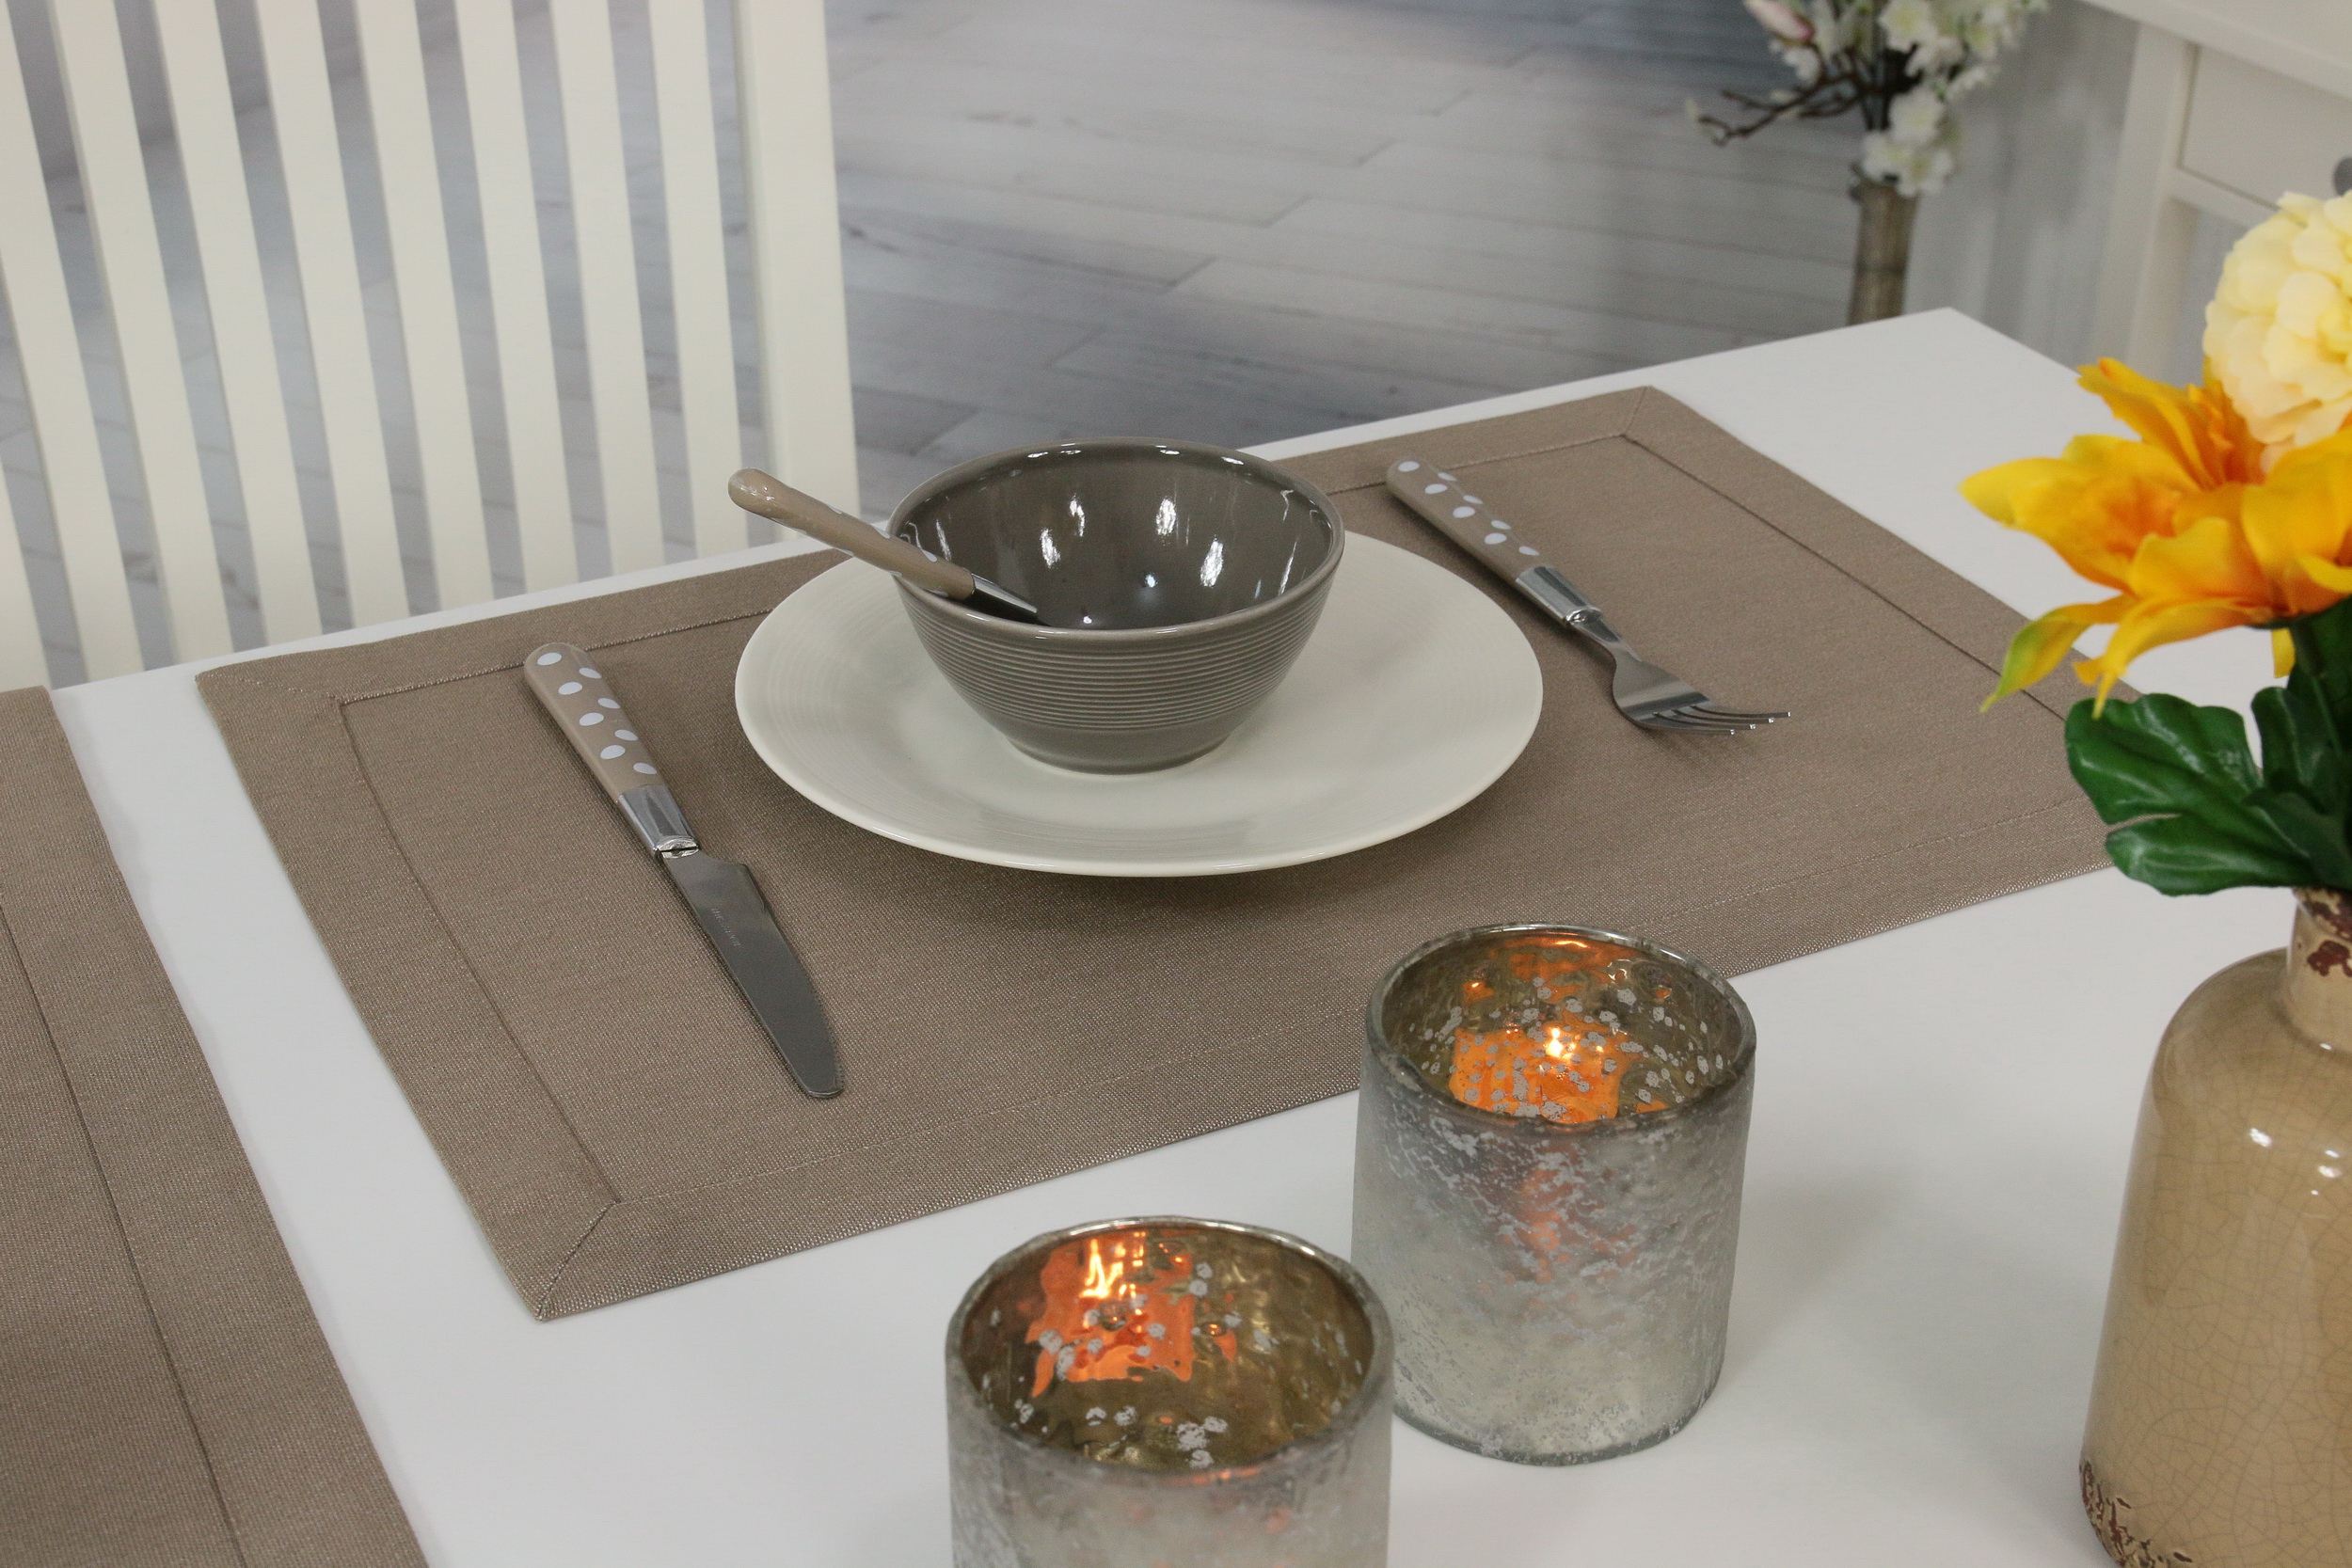 Tischsets & Platzsets BRAUN | TiDeko® Tischdecken-Shop.de. Tischdecken  Markenqualität